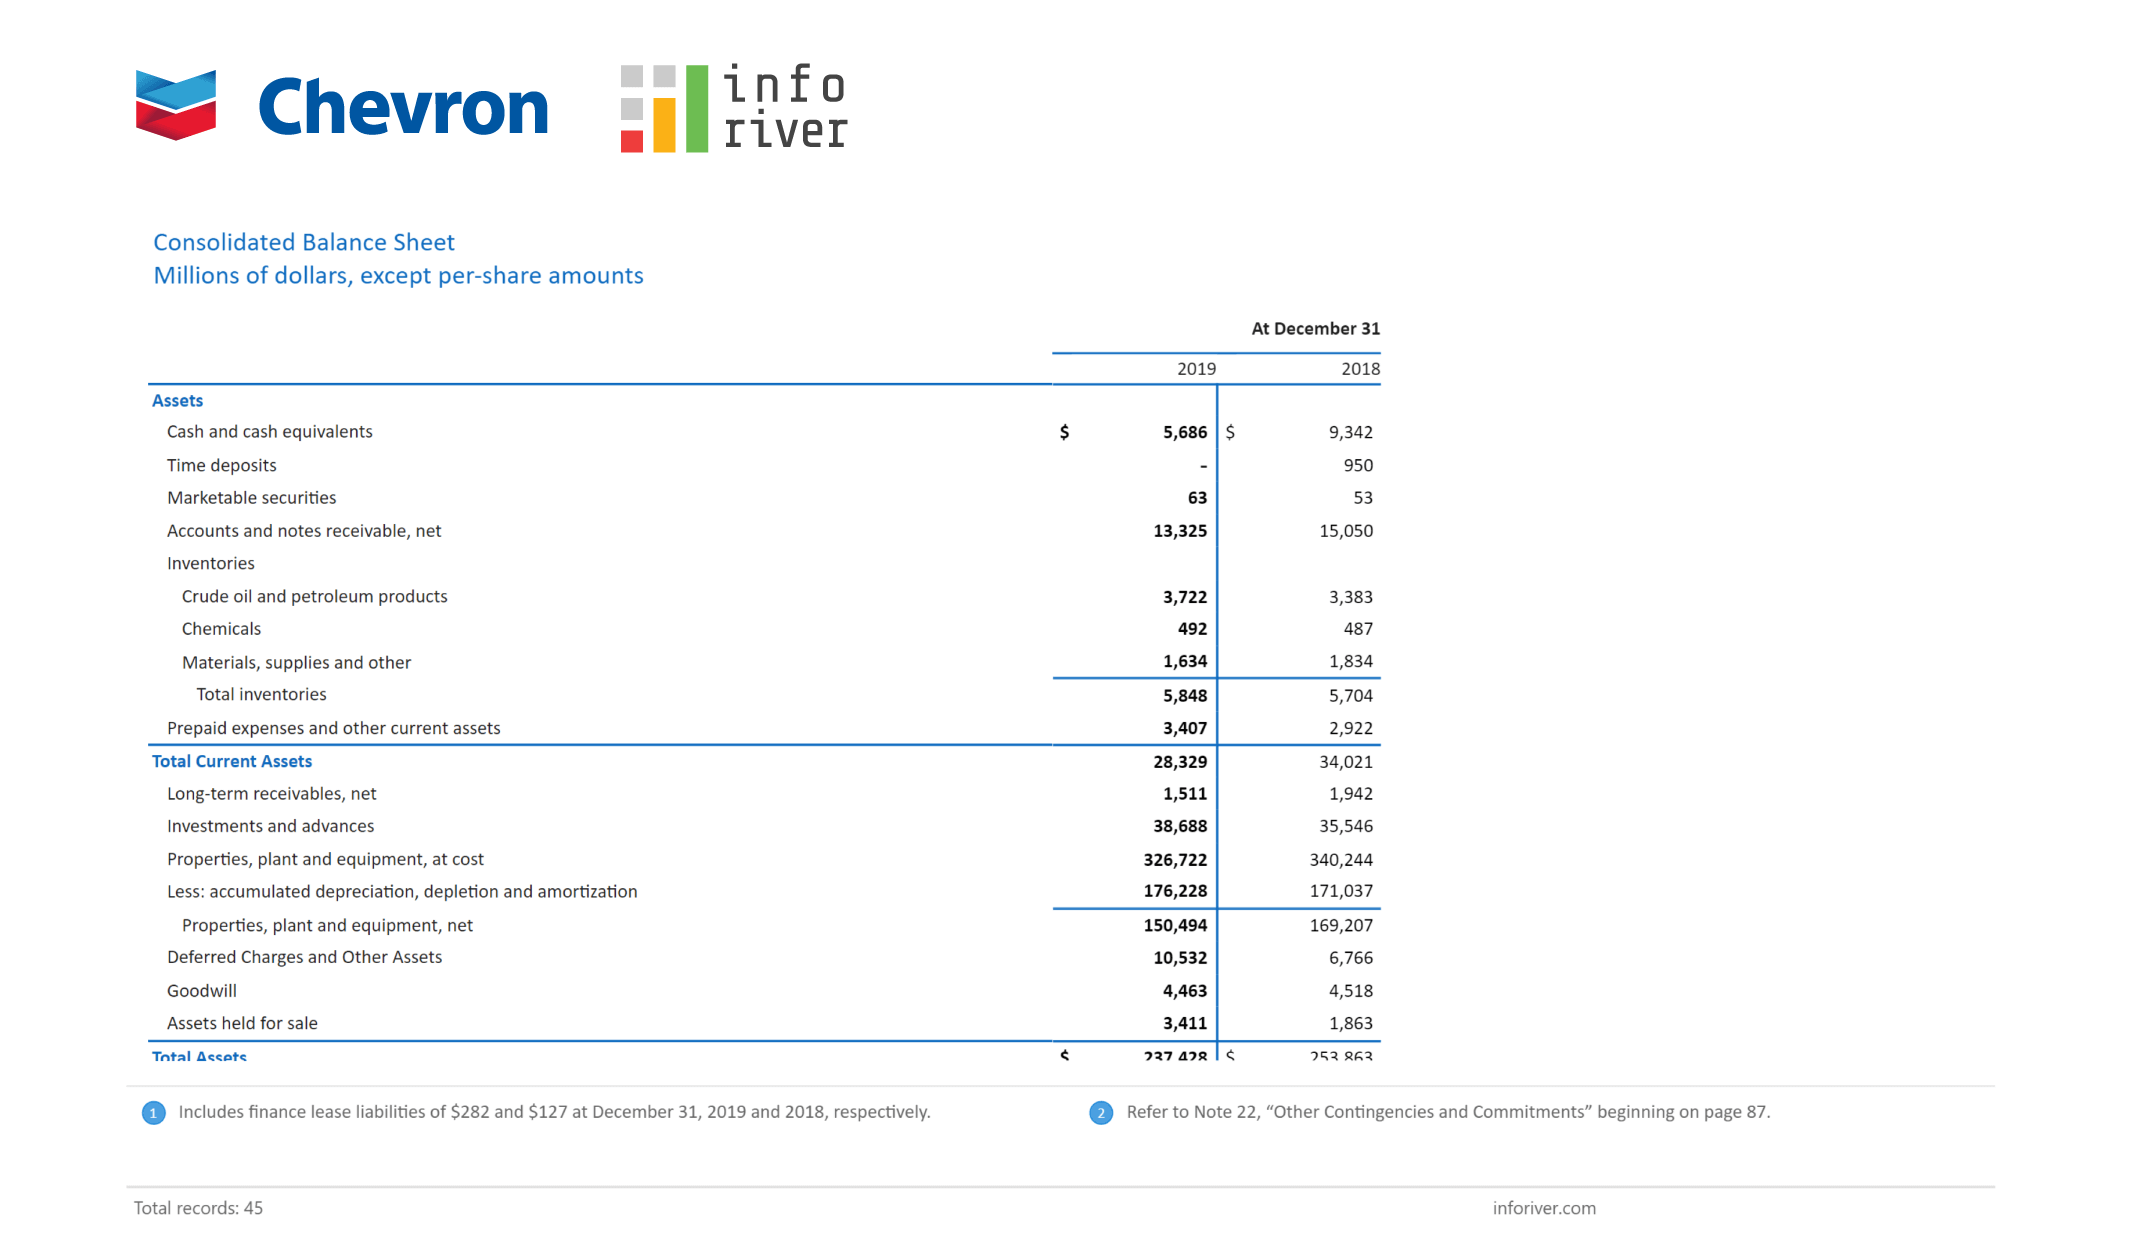 Financial Reporting in Power BI using matrix/table - Chevron